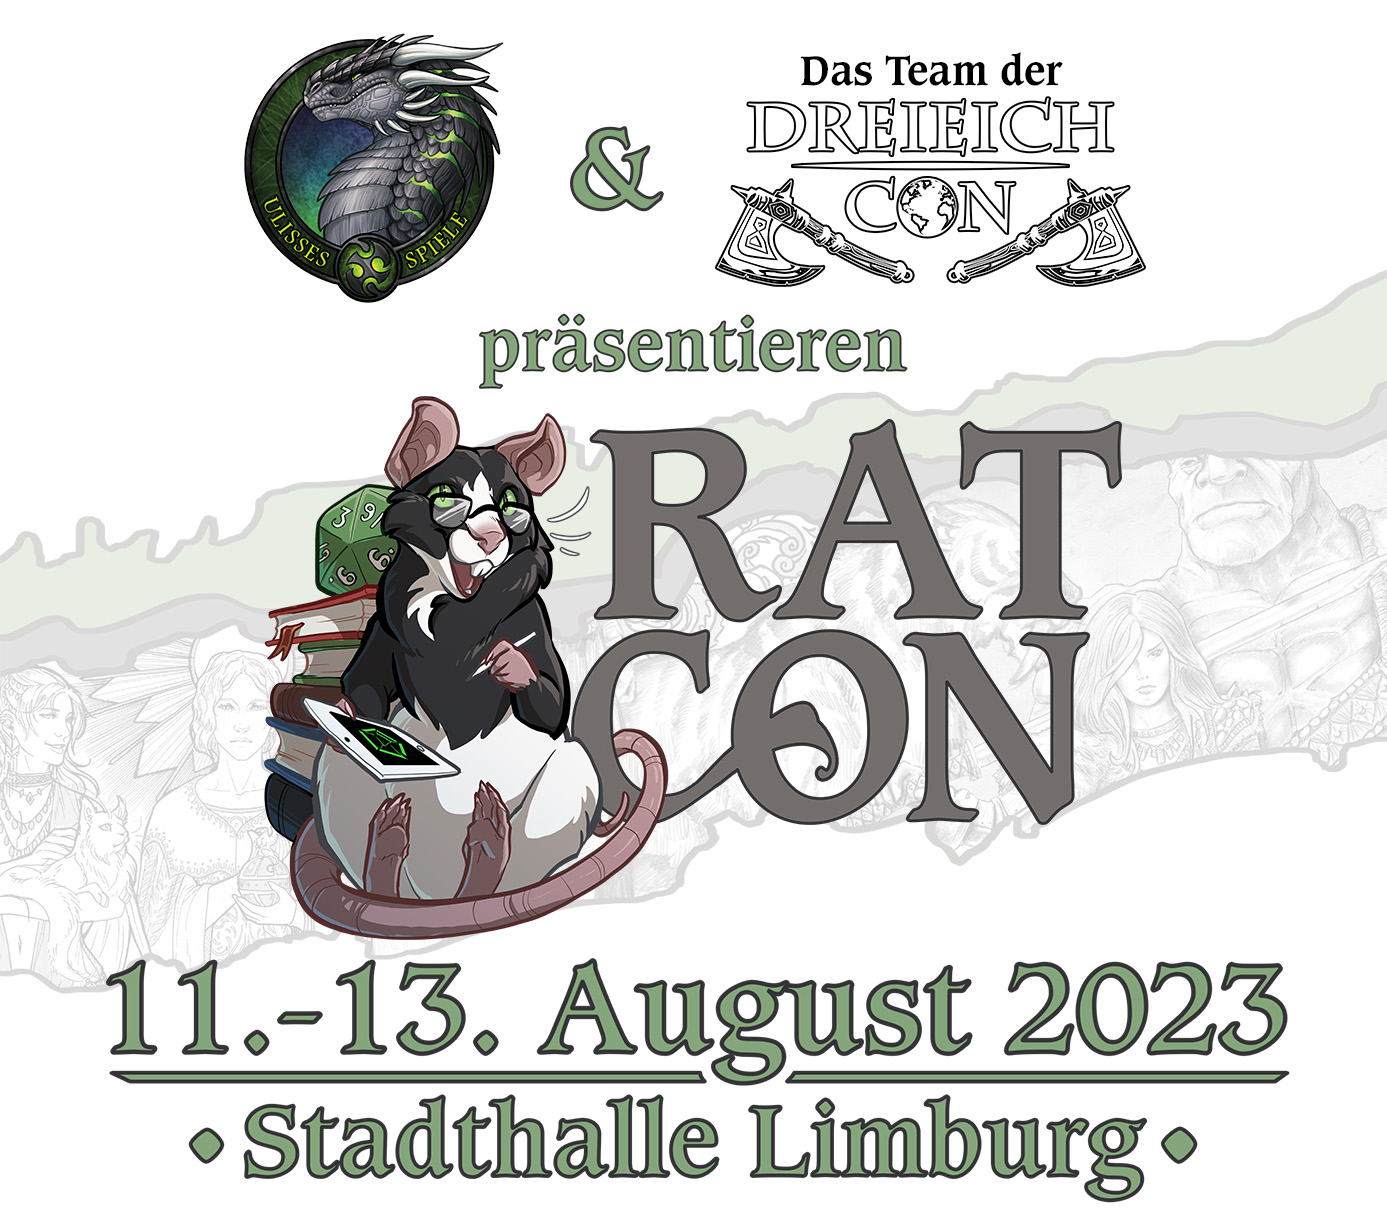 Ankündigungsgrafik der RatCon Limburg, welche in Kooperation von Ulisses Spiele und dem Team der DreieichCon vom 11. - 13. August 2023 in der Stadthalle Limburg stattfinden wird.